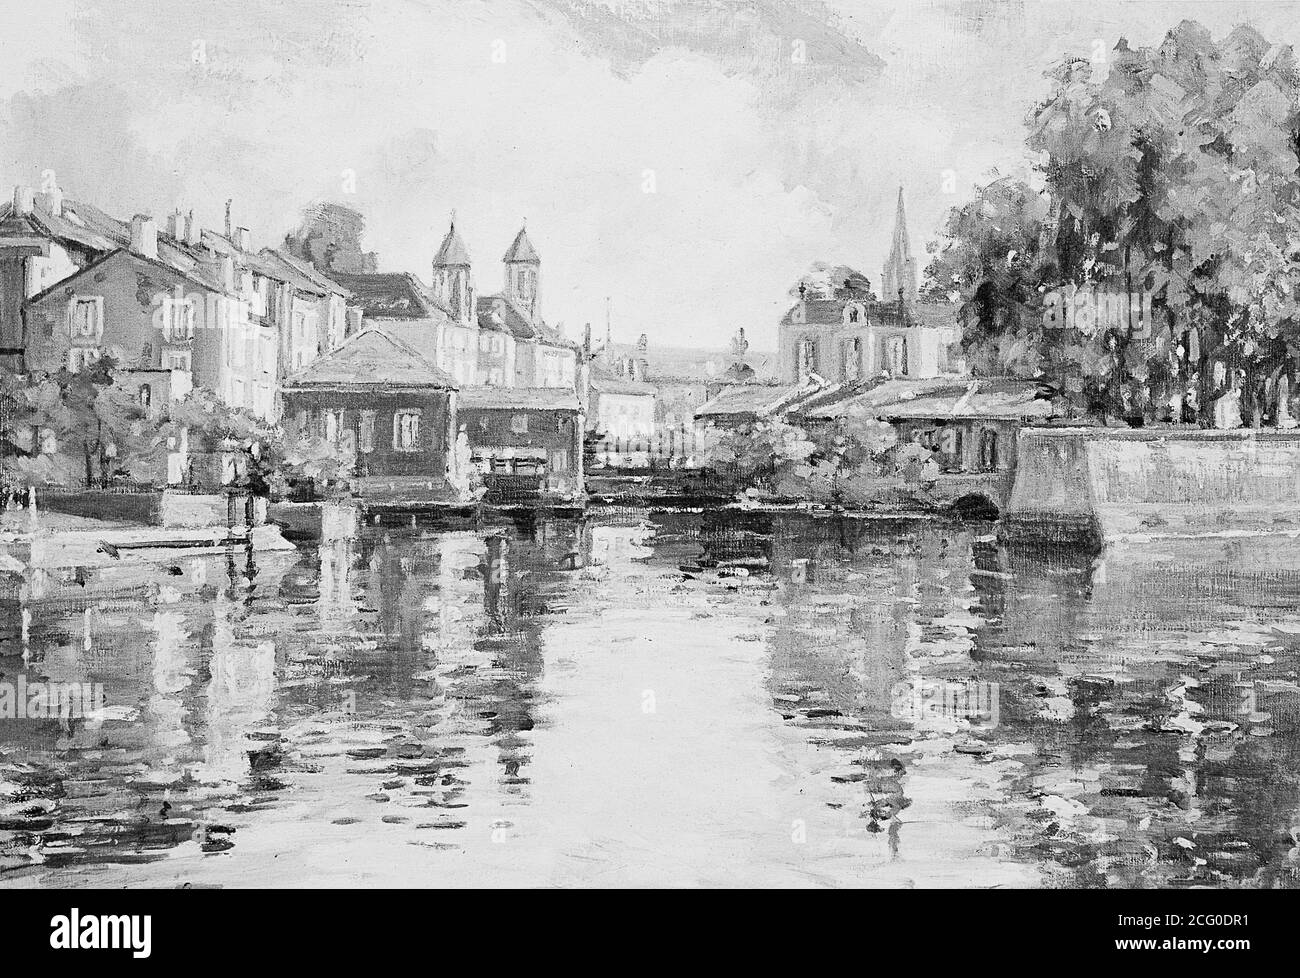 Dipinto originale della città europea sull'acqua. Impressionismo olio pittura paesaggio urbano in bianco e nero. Foto Stock